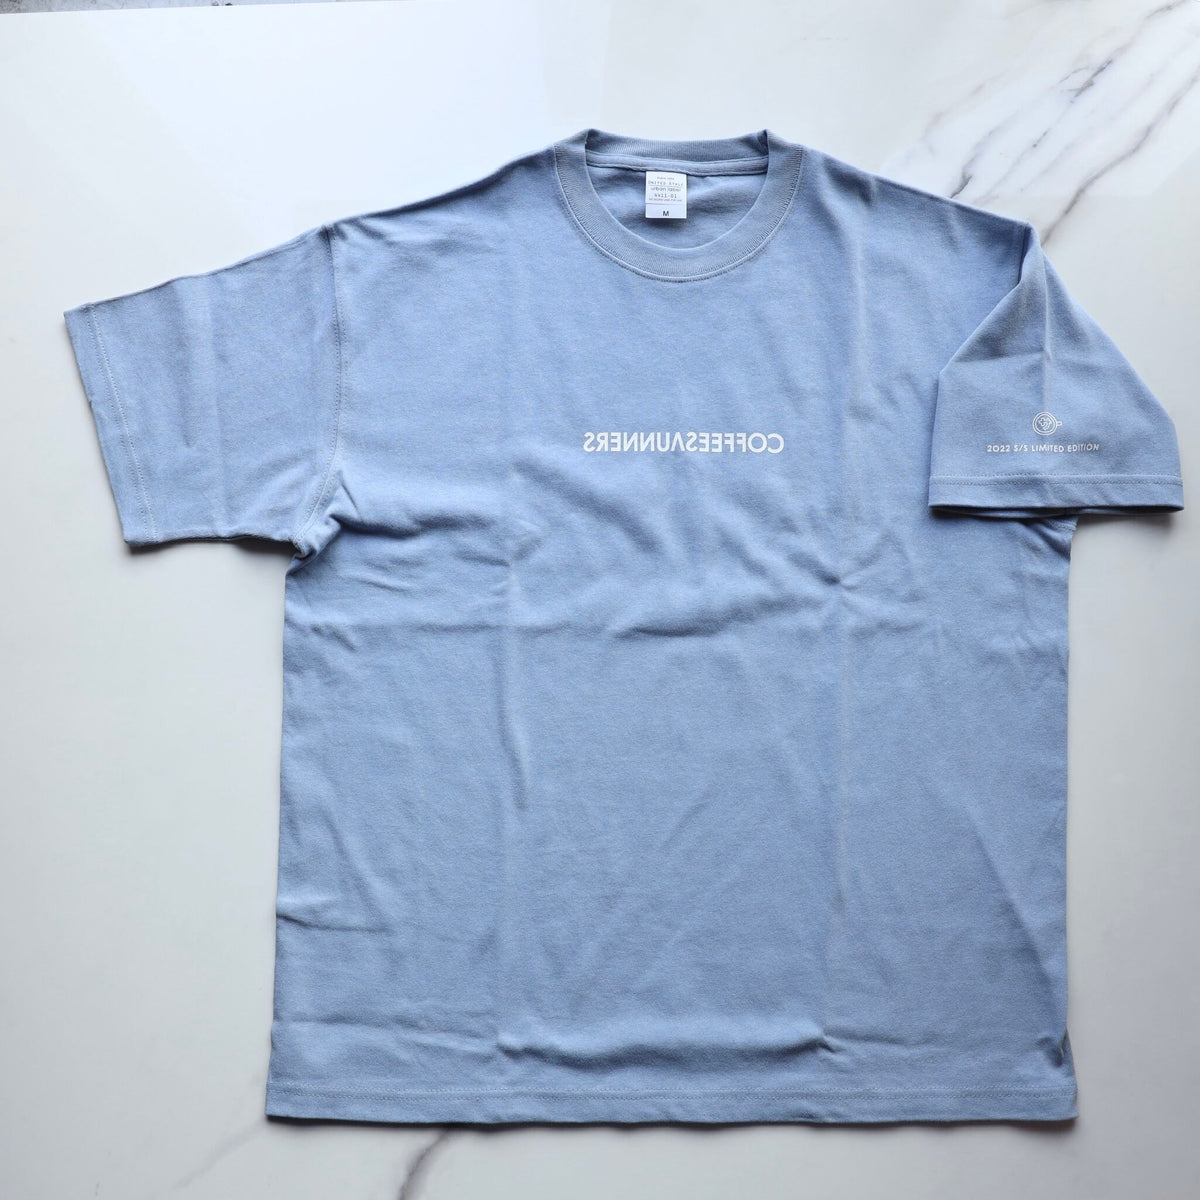 コーヒーサウナーズTシャツACID BLUE Limited edition